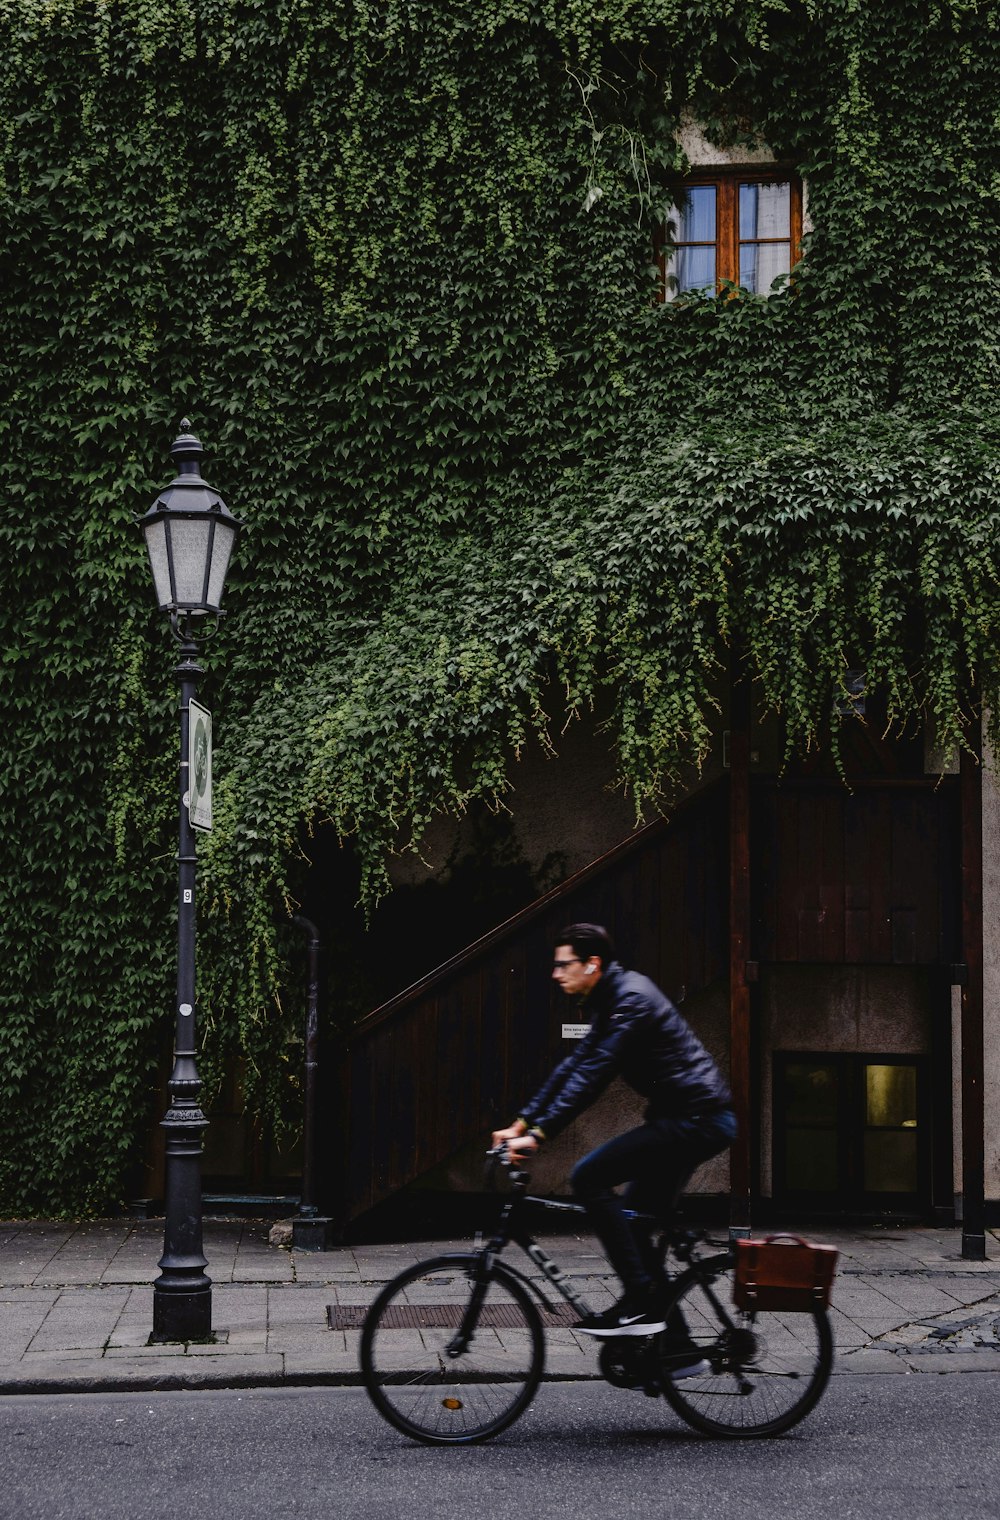 hommes conduisant un vélo près de la maison et du lampadaire pendant la journée